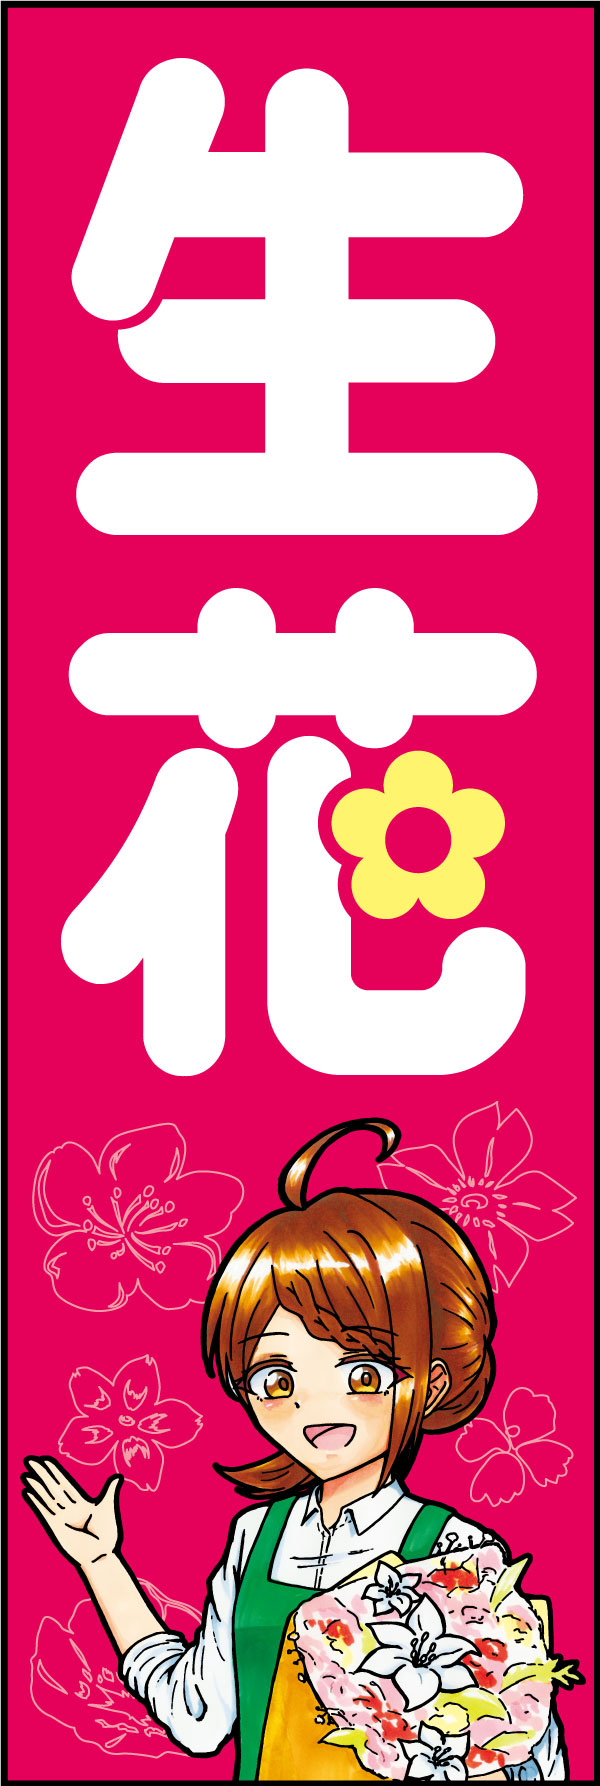 生花 162_01 「生花」のぼりです。シンボリックな「花」の文字と、親しみやすいイラストの組み合わせで店先を彩ります。（D.N）